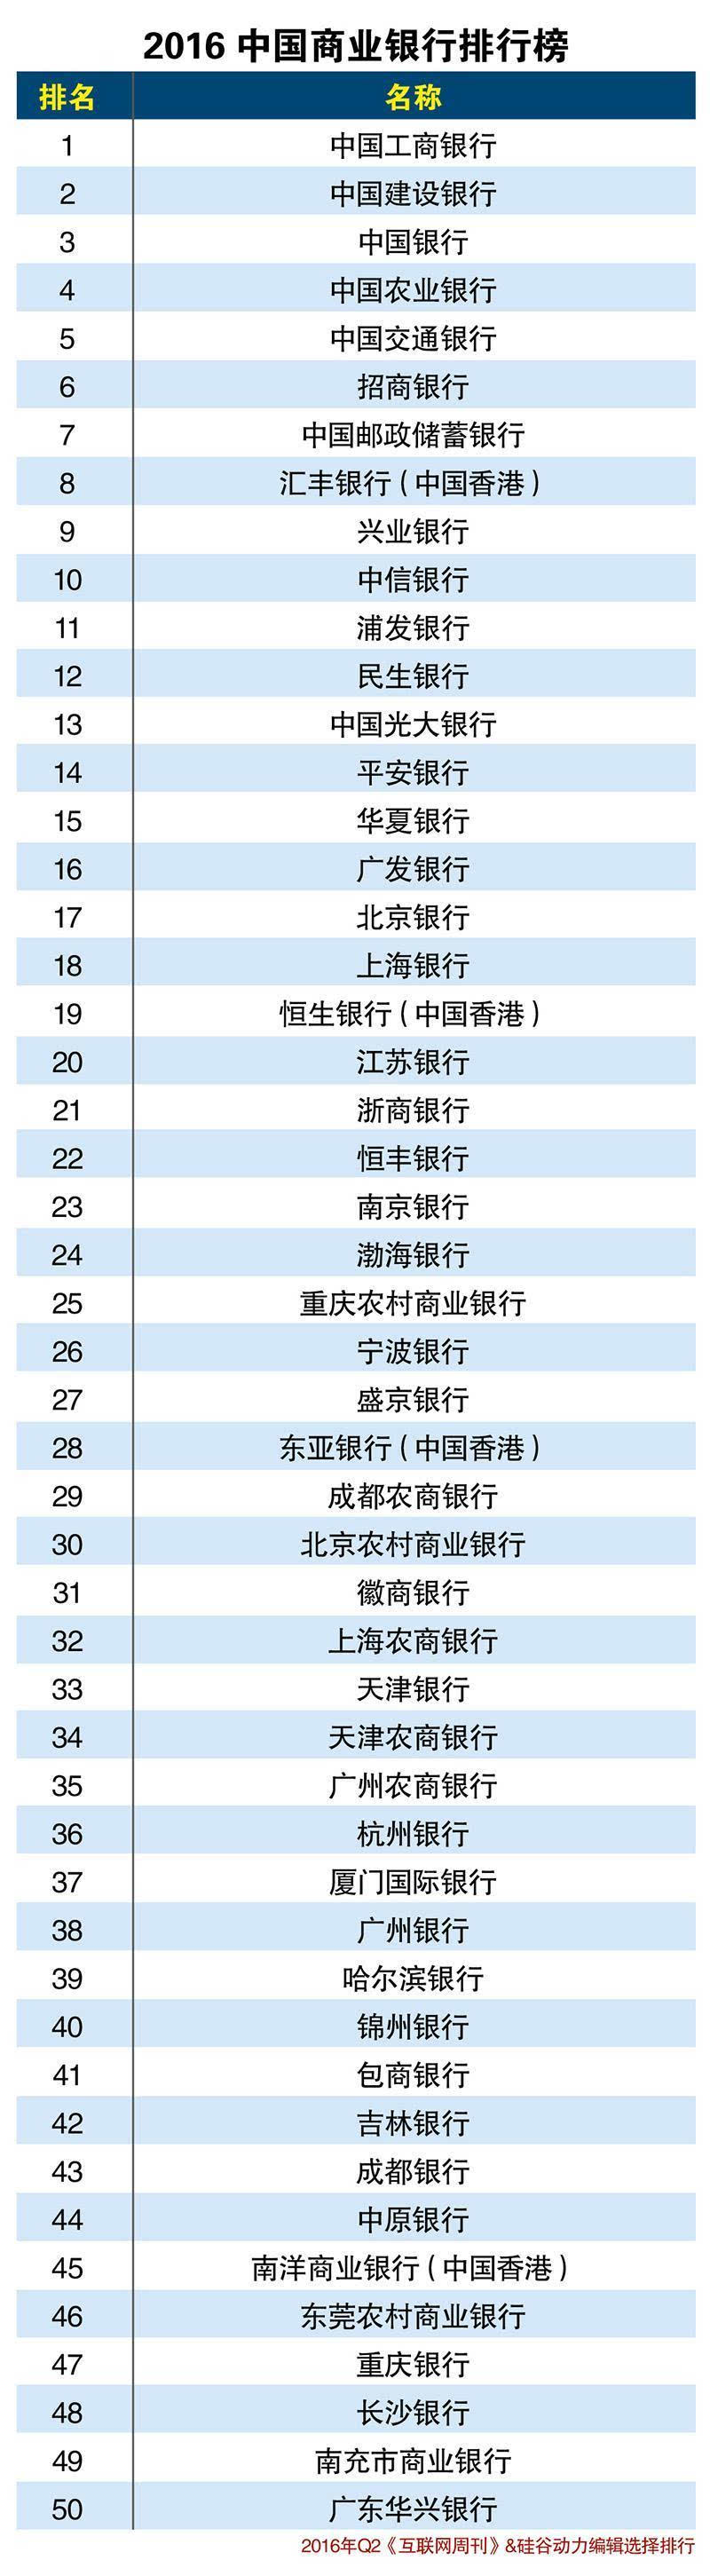 2016中国商业银行排行榜